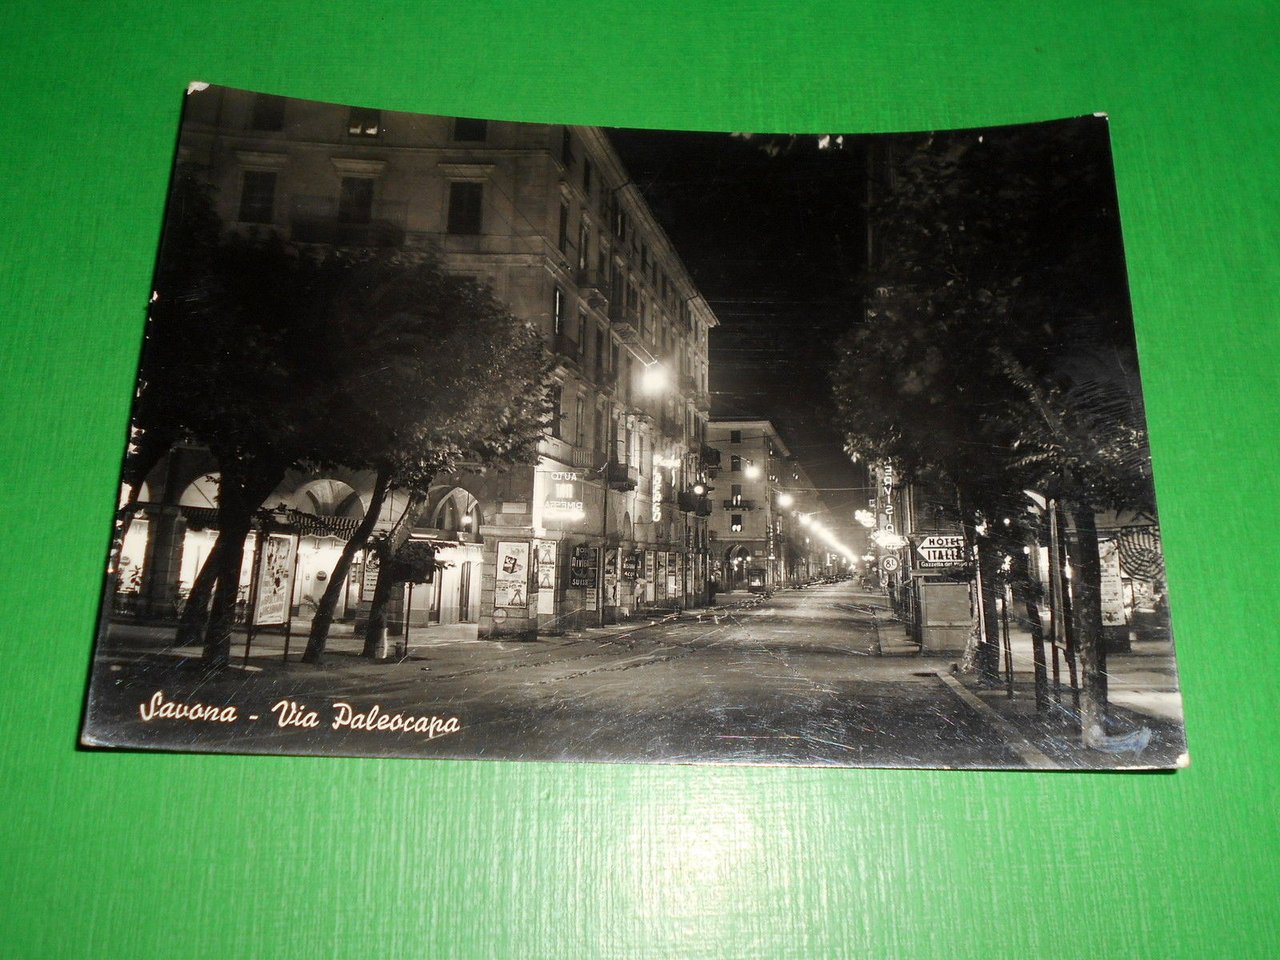 Cartolina Savona - Via Paleocapa 1961.